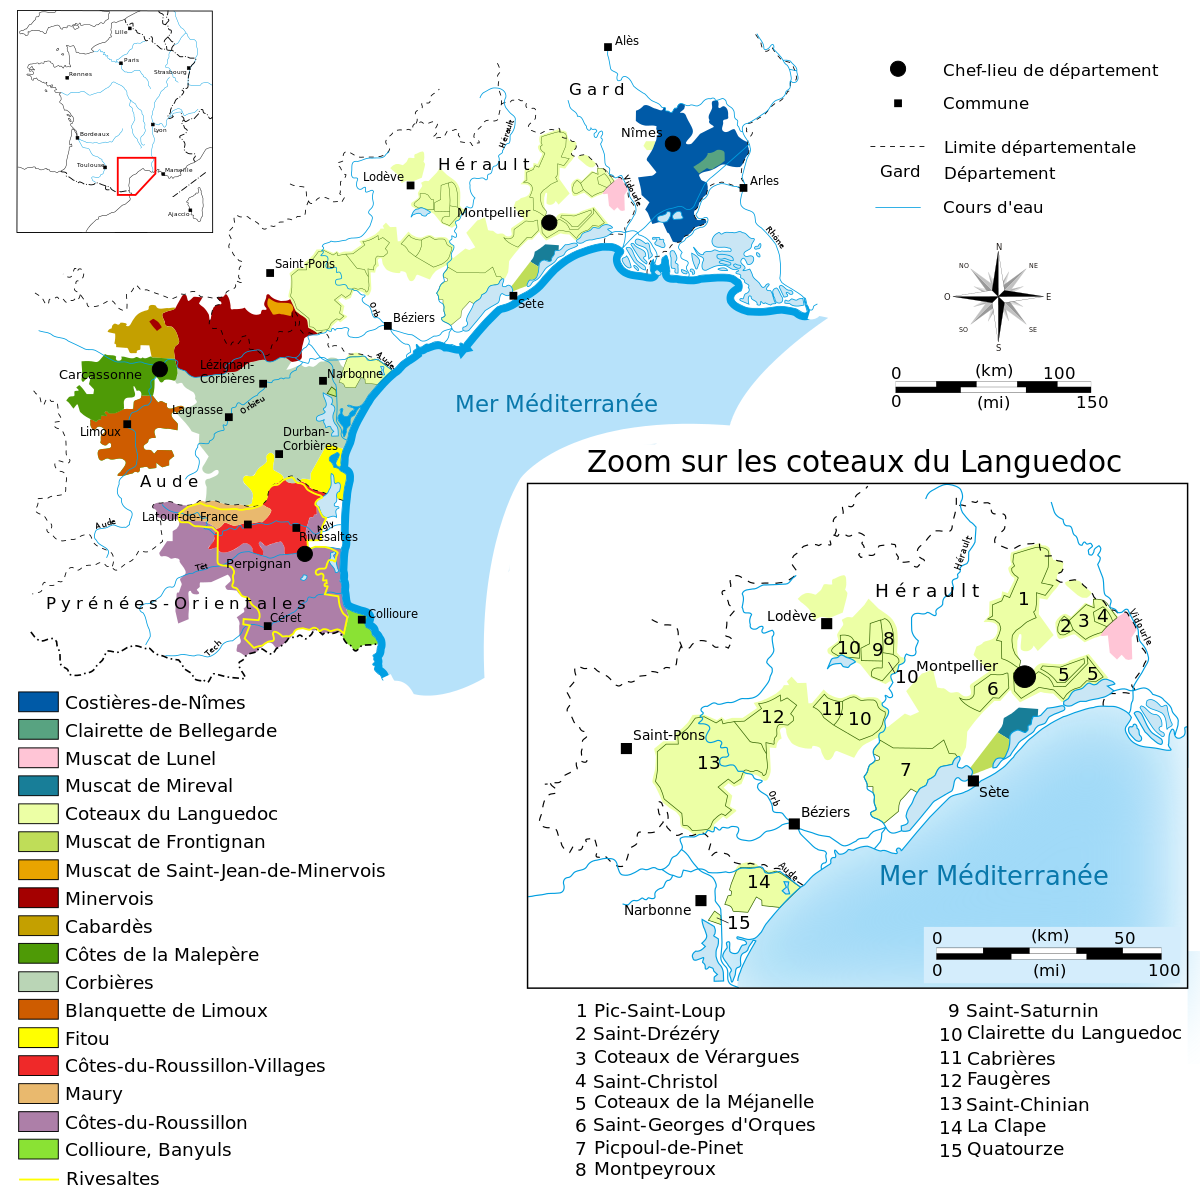 La carte des appellations viticoles du Languedoc-Roussillon